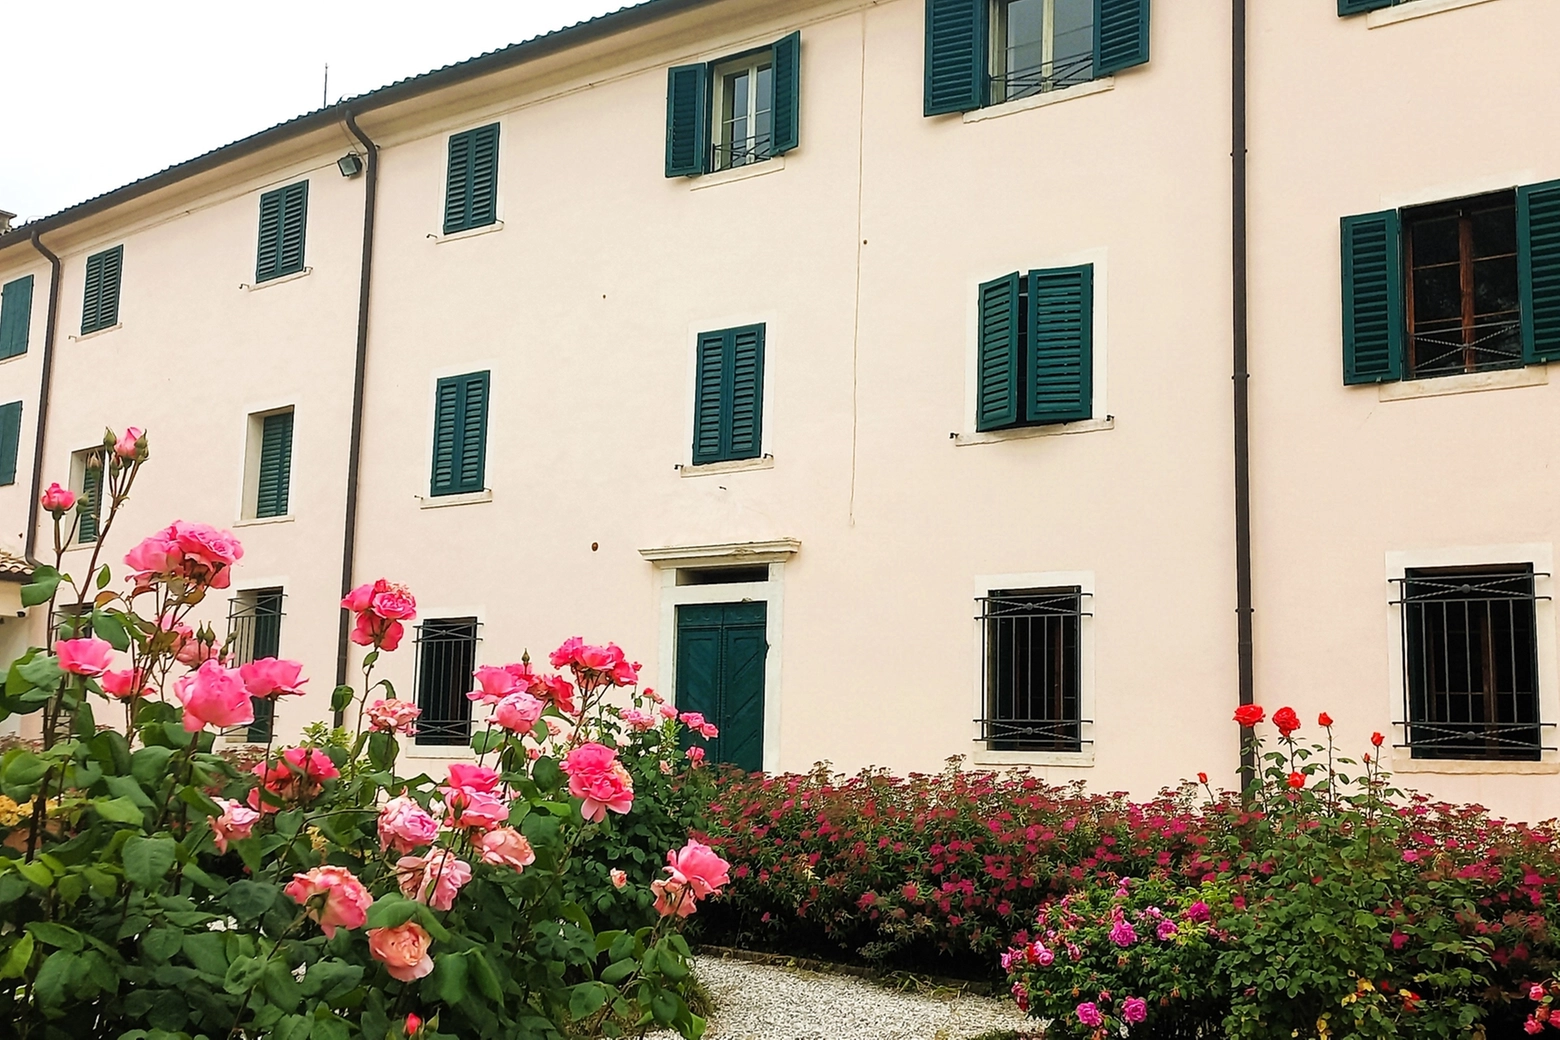 La Casa Museo e Gypsotheca di Antonio Canova a Possagno, in provincia di Treviso